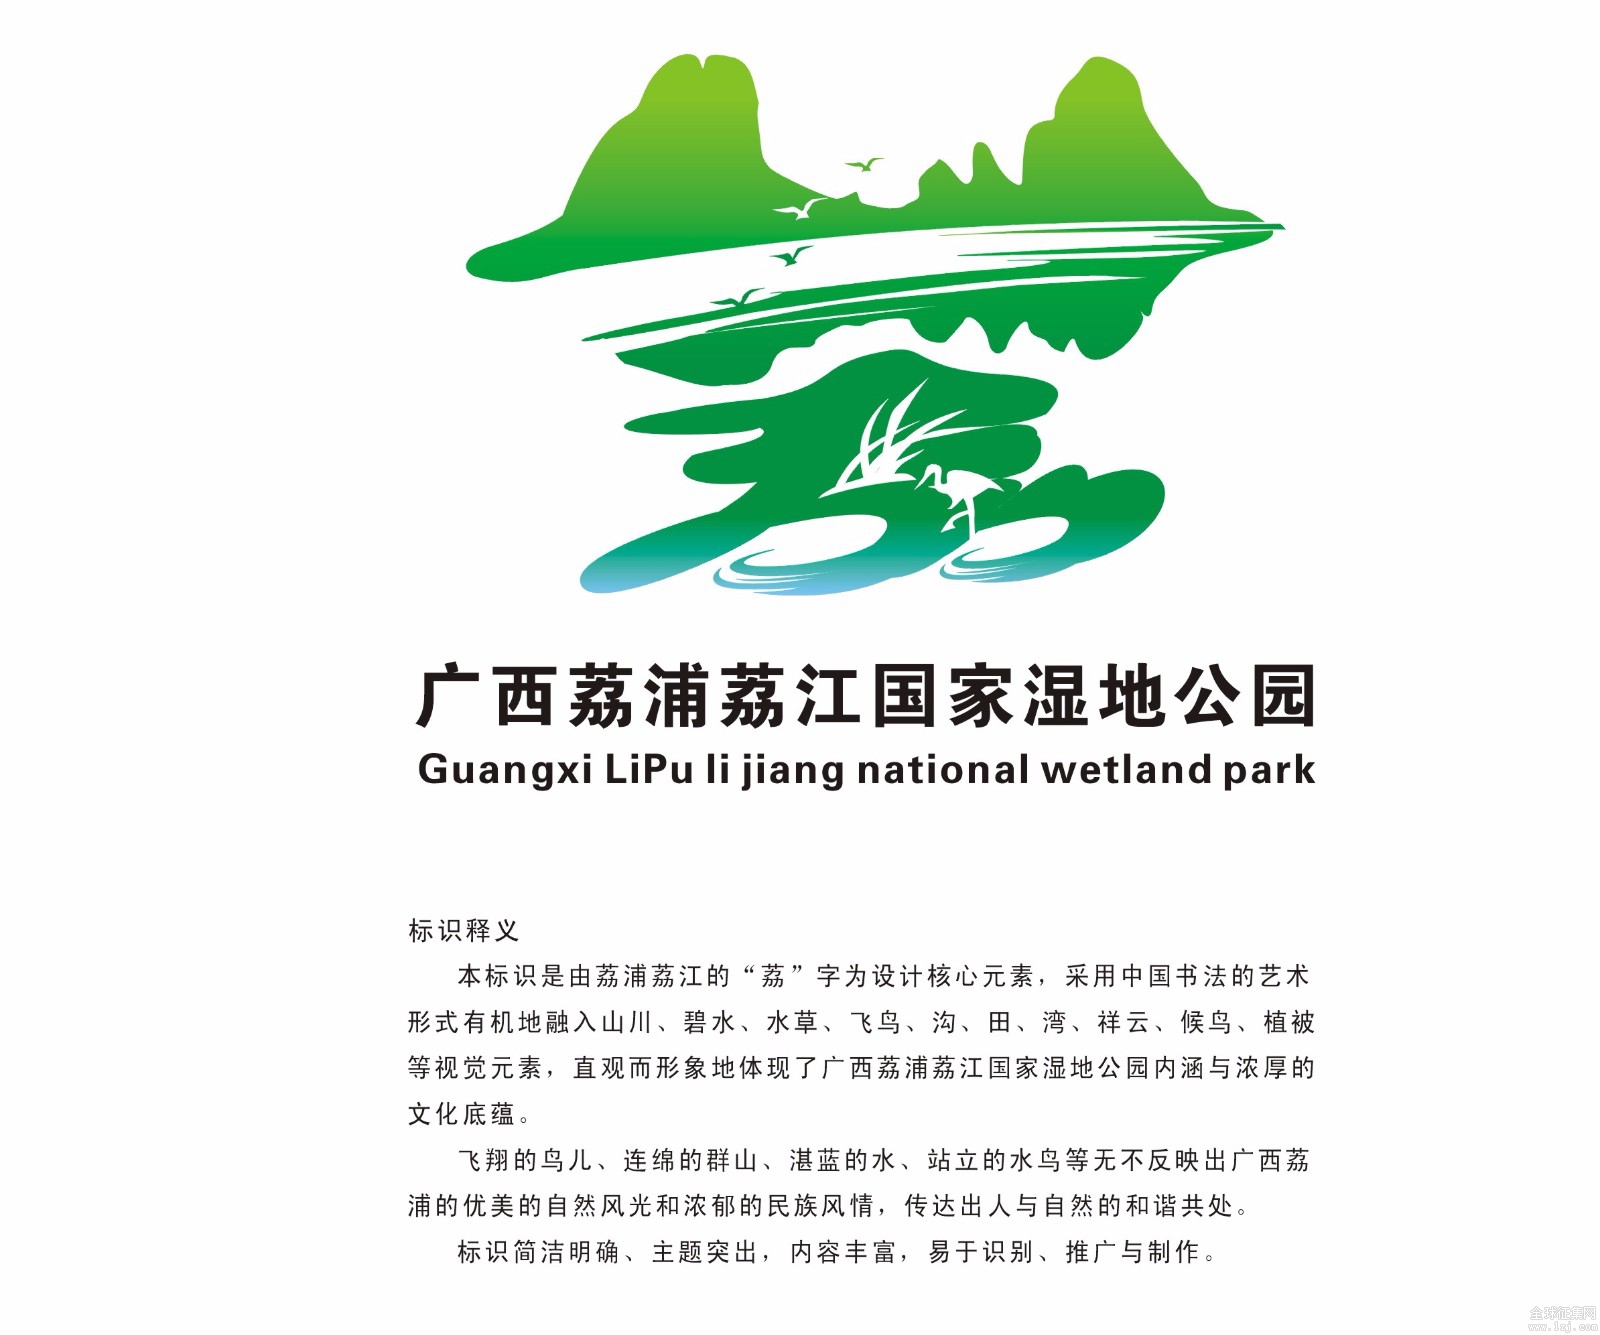 广西荔浦荔江国家湿地公园标识(logo) 设计征集获奖作品公示